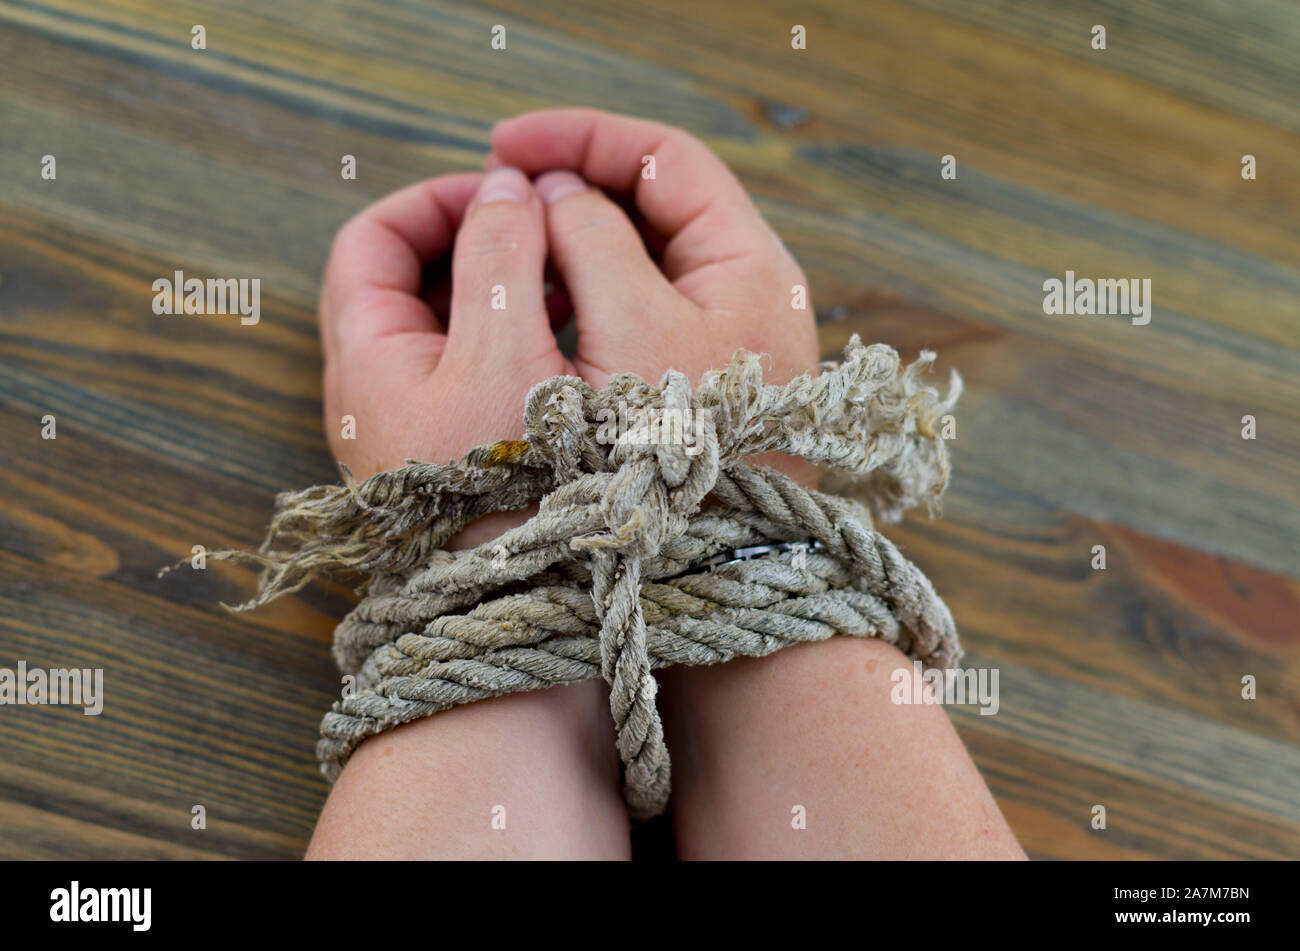 Die Frau Hände mit einem alten Seil gebunden, das Seil grau mit dem Alter ist und Entwirren an den Enden. Es ist möglich, das Bild so zu interpretieren, als Folter. Stockfoto